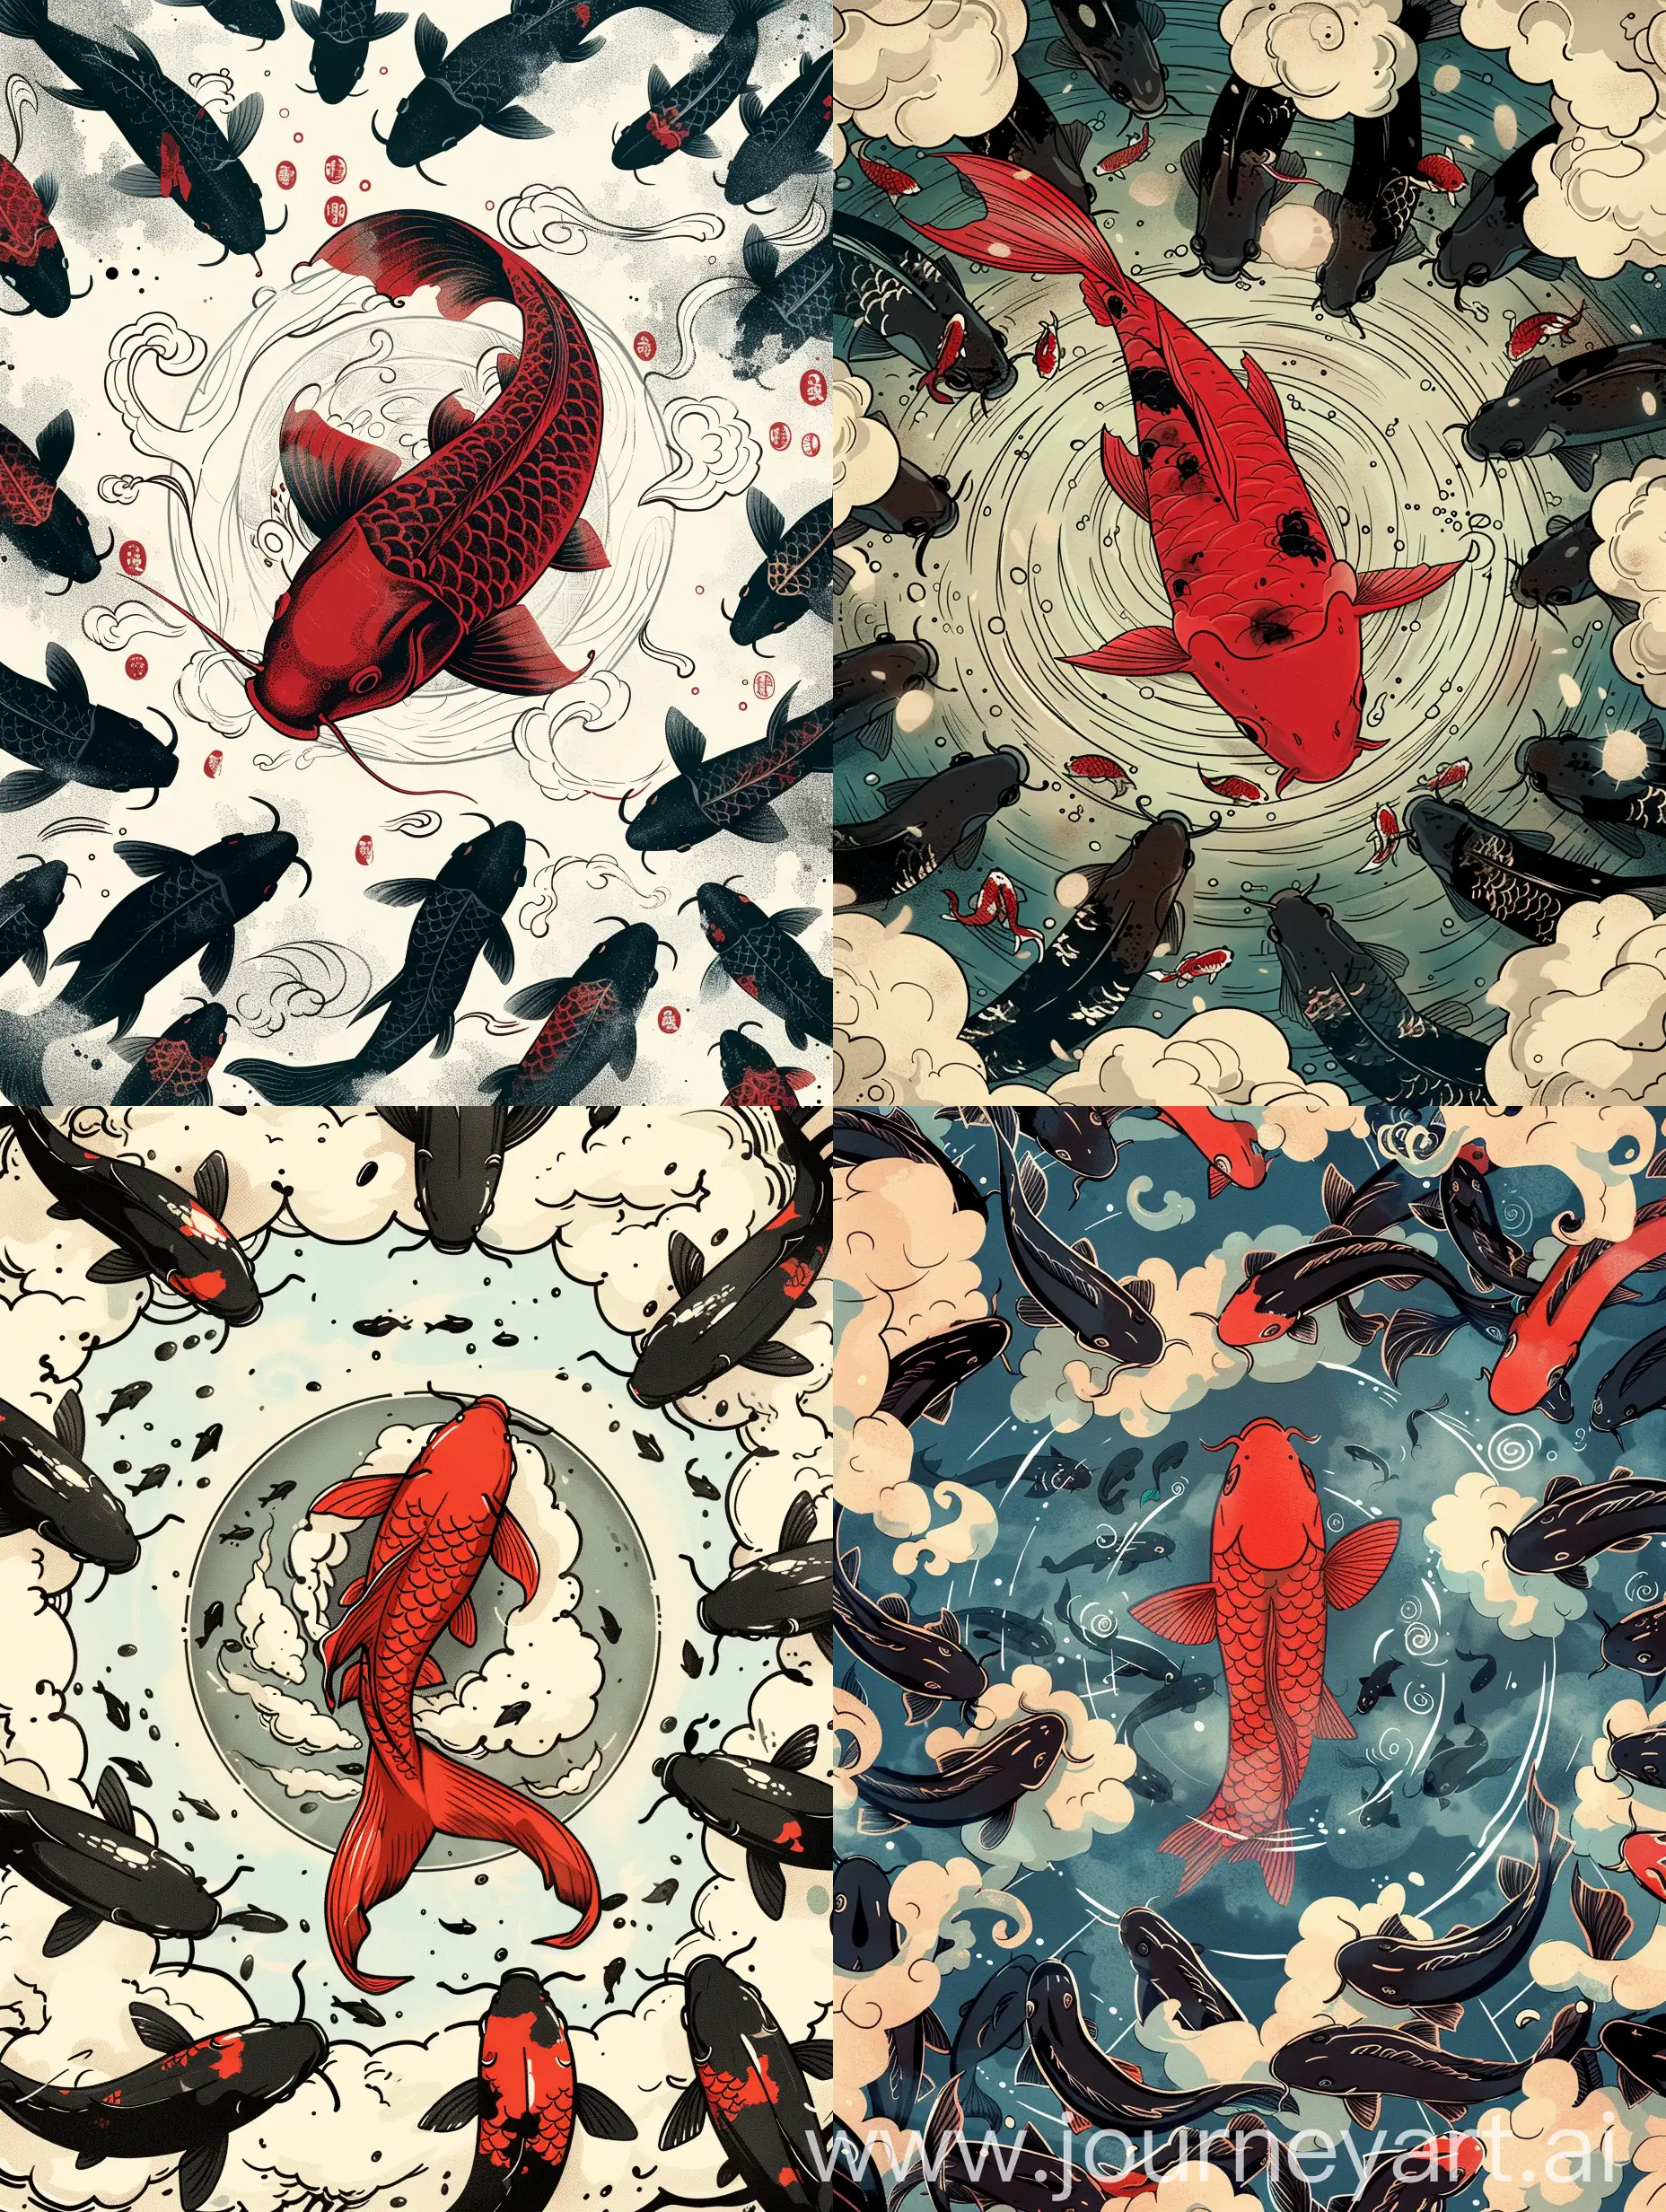 漫画版本的锦鲤，中间一条大红鱼，祥云图案的圆圈圈起来，周围许多普通黑色鱼